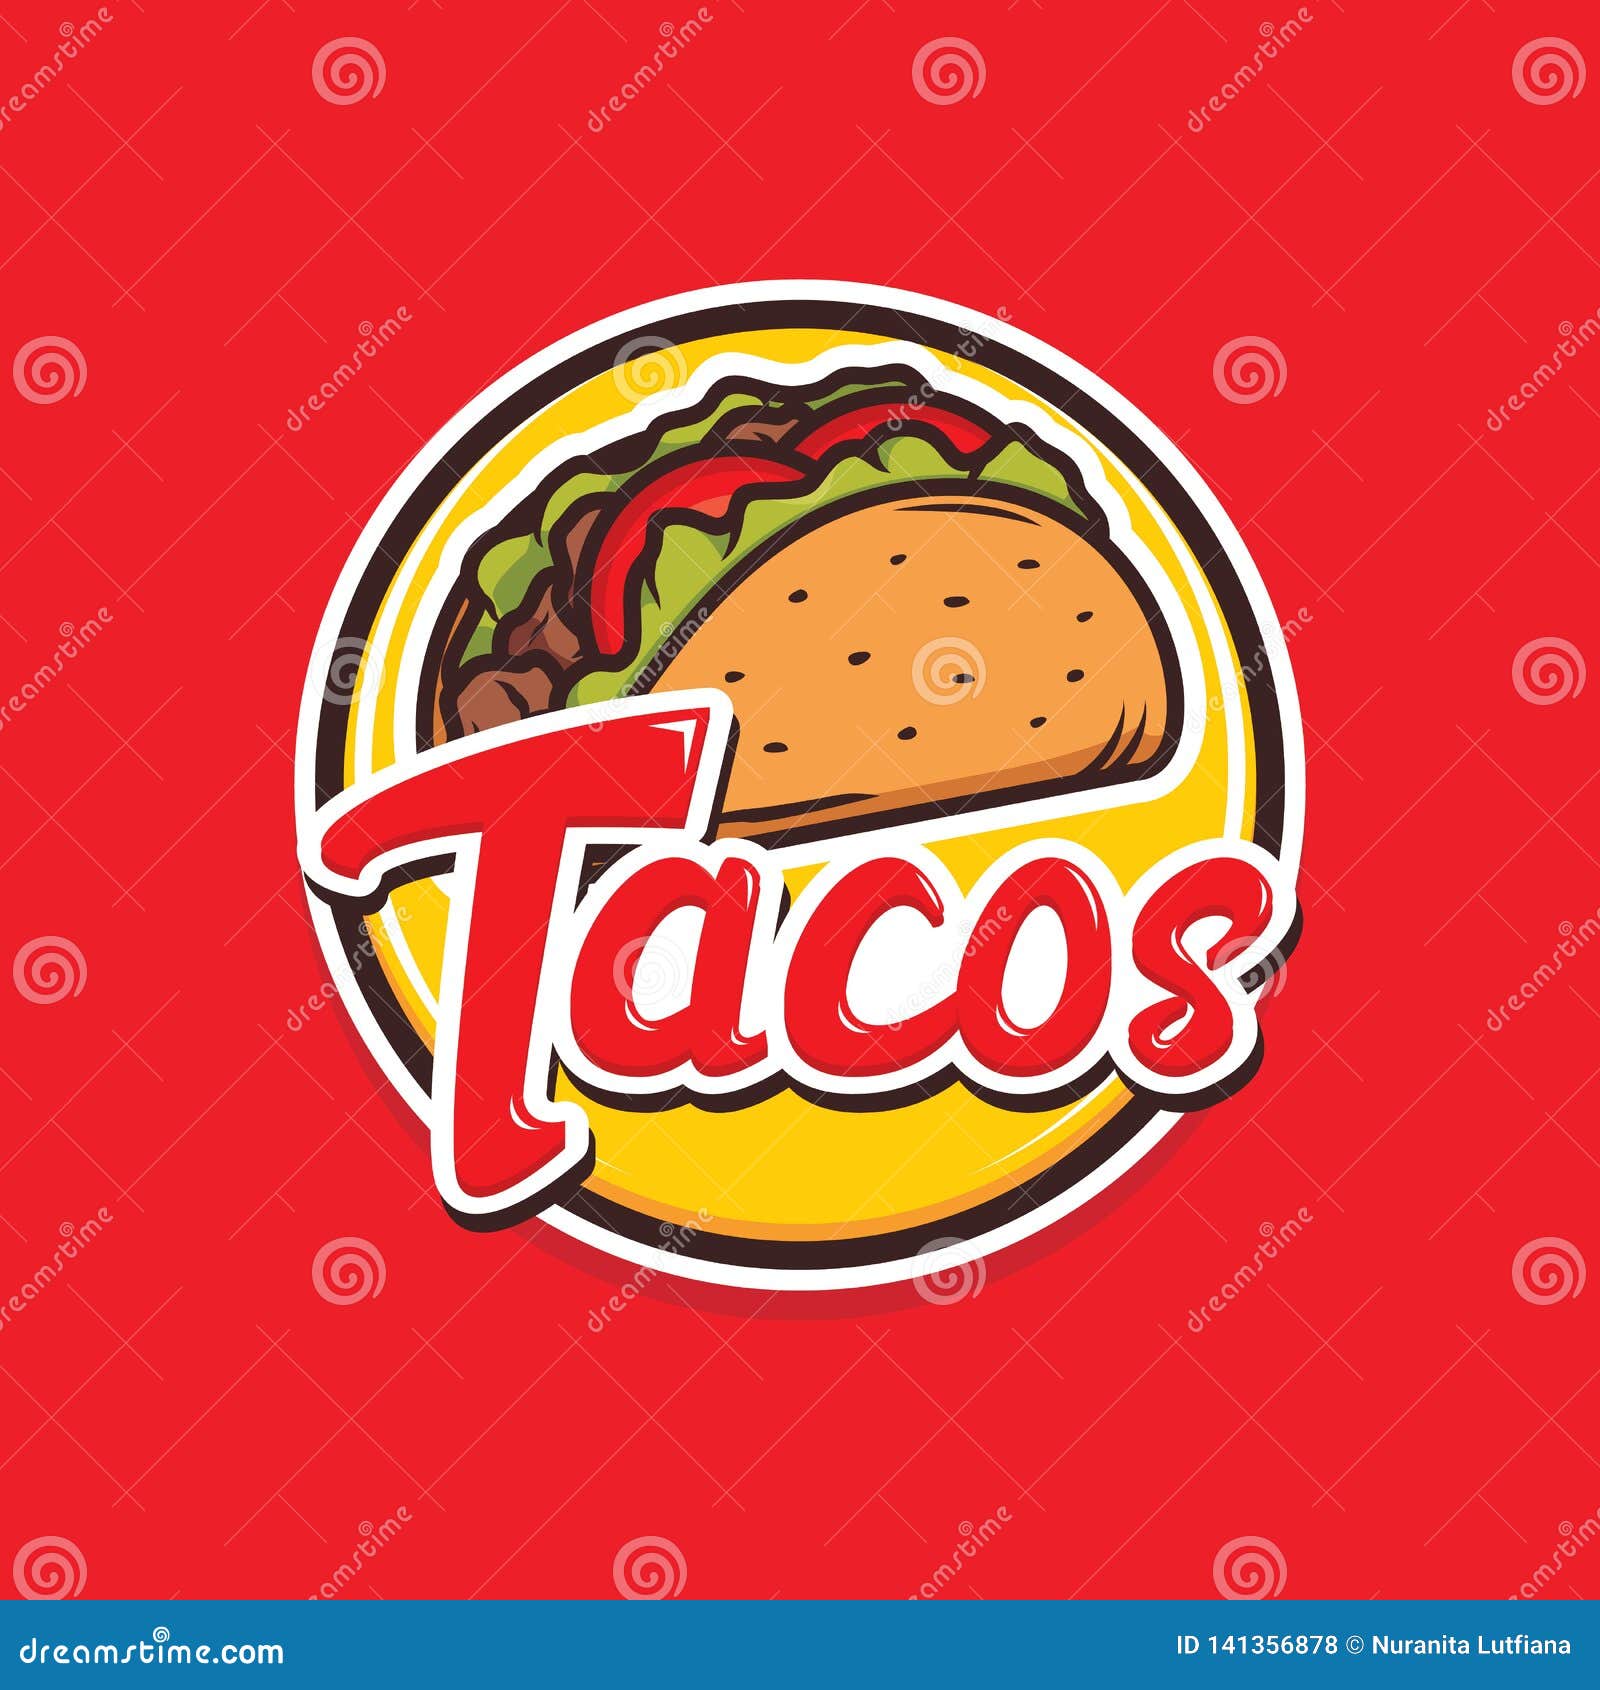 Tacos Logo Stock Illustrations – 1,370 Tacos Logo Stock Illustrations,  Vectors & Clipart - Dreamstime